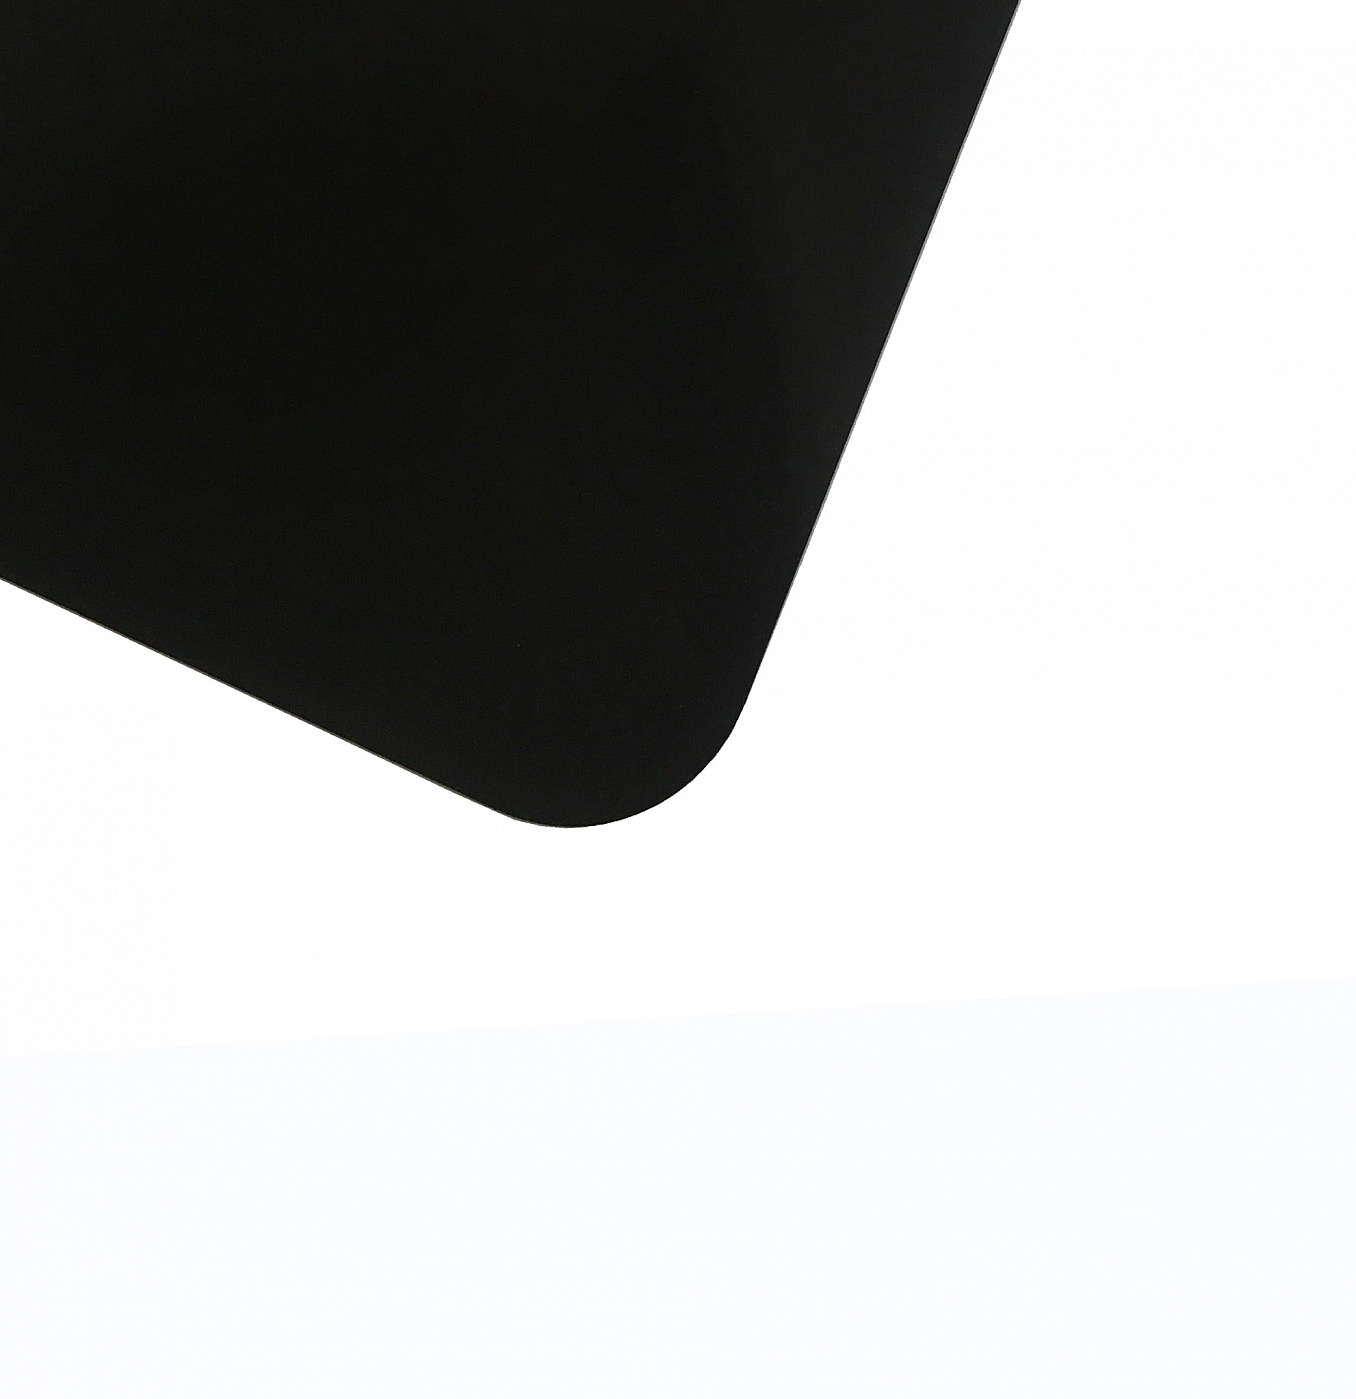 Планшет для пленэра из оргстекла 3 мм, под лист размера А3, цвет черный